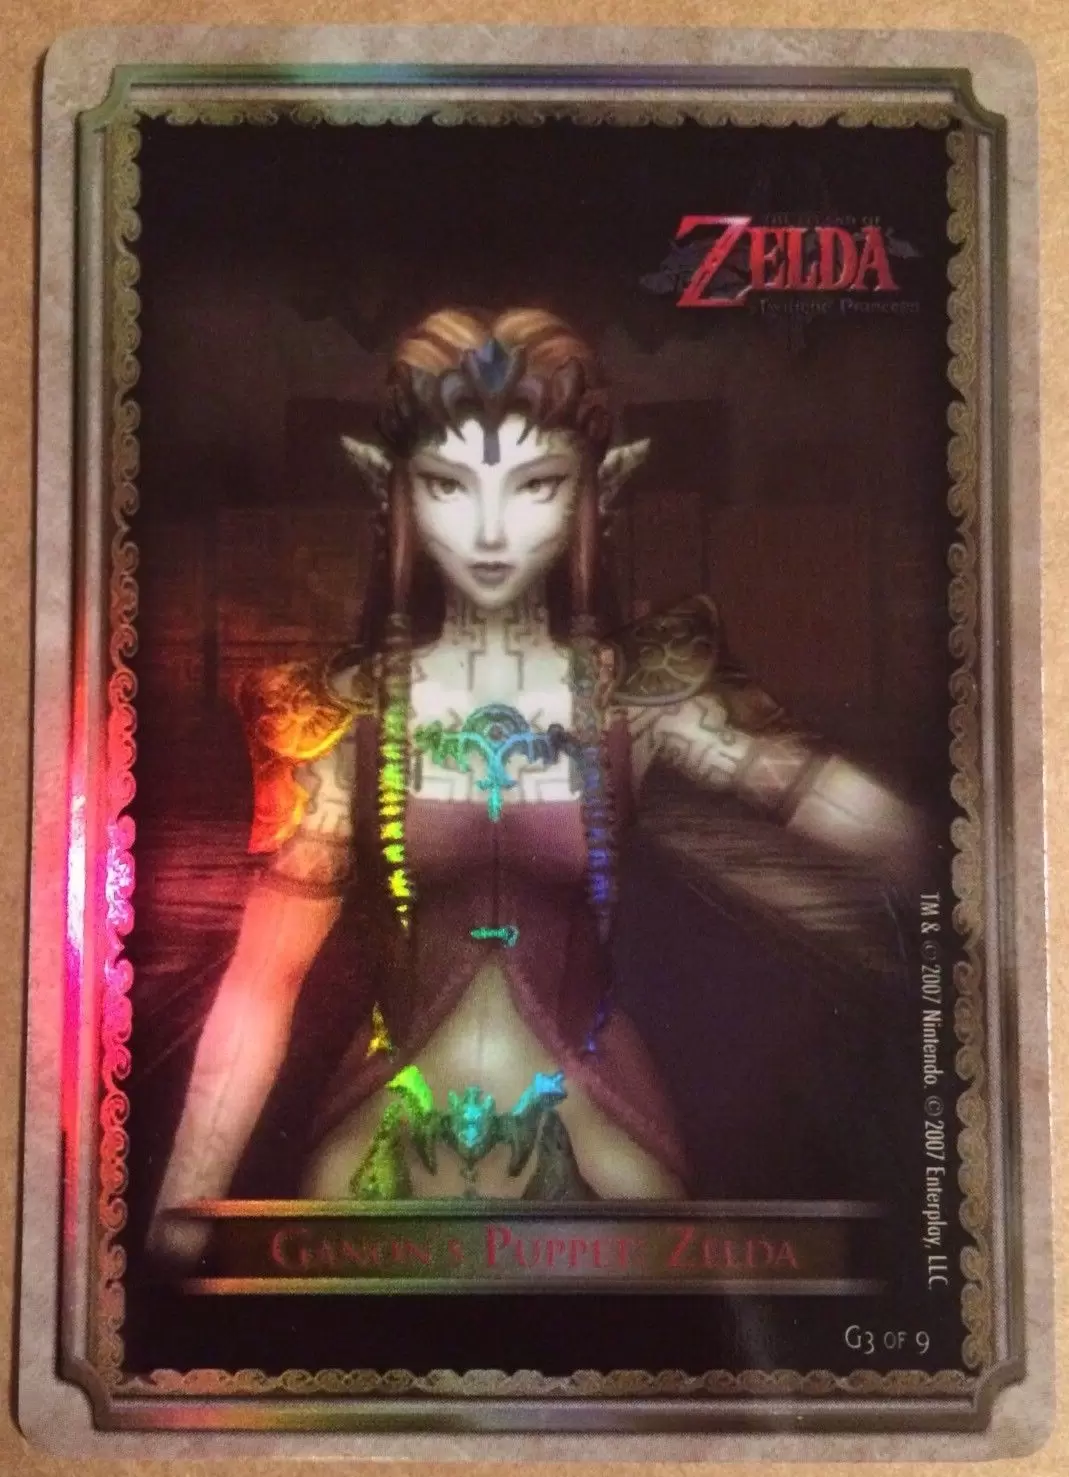 Zelda - Twilight Princess - Ganon’s Puppet: Zelda